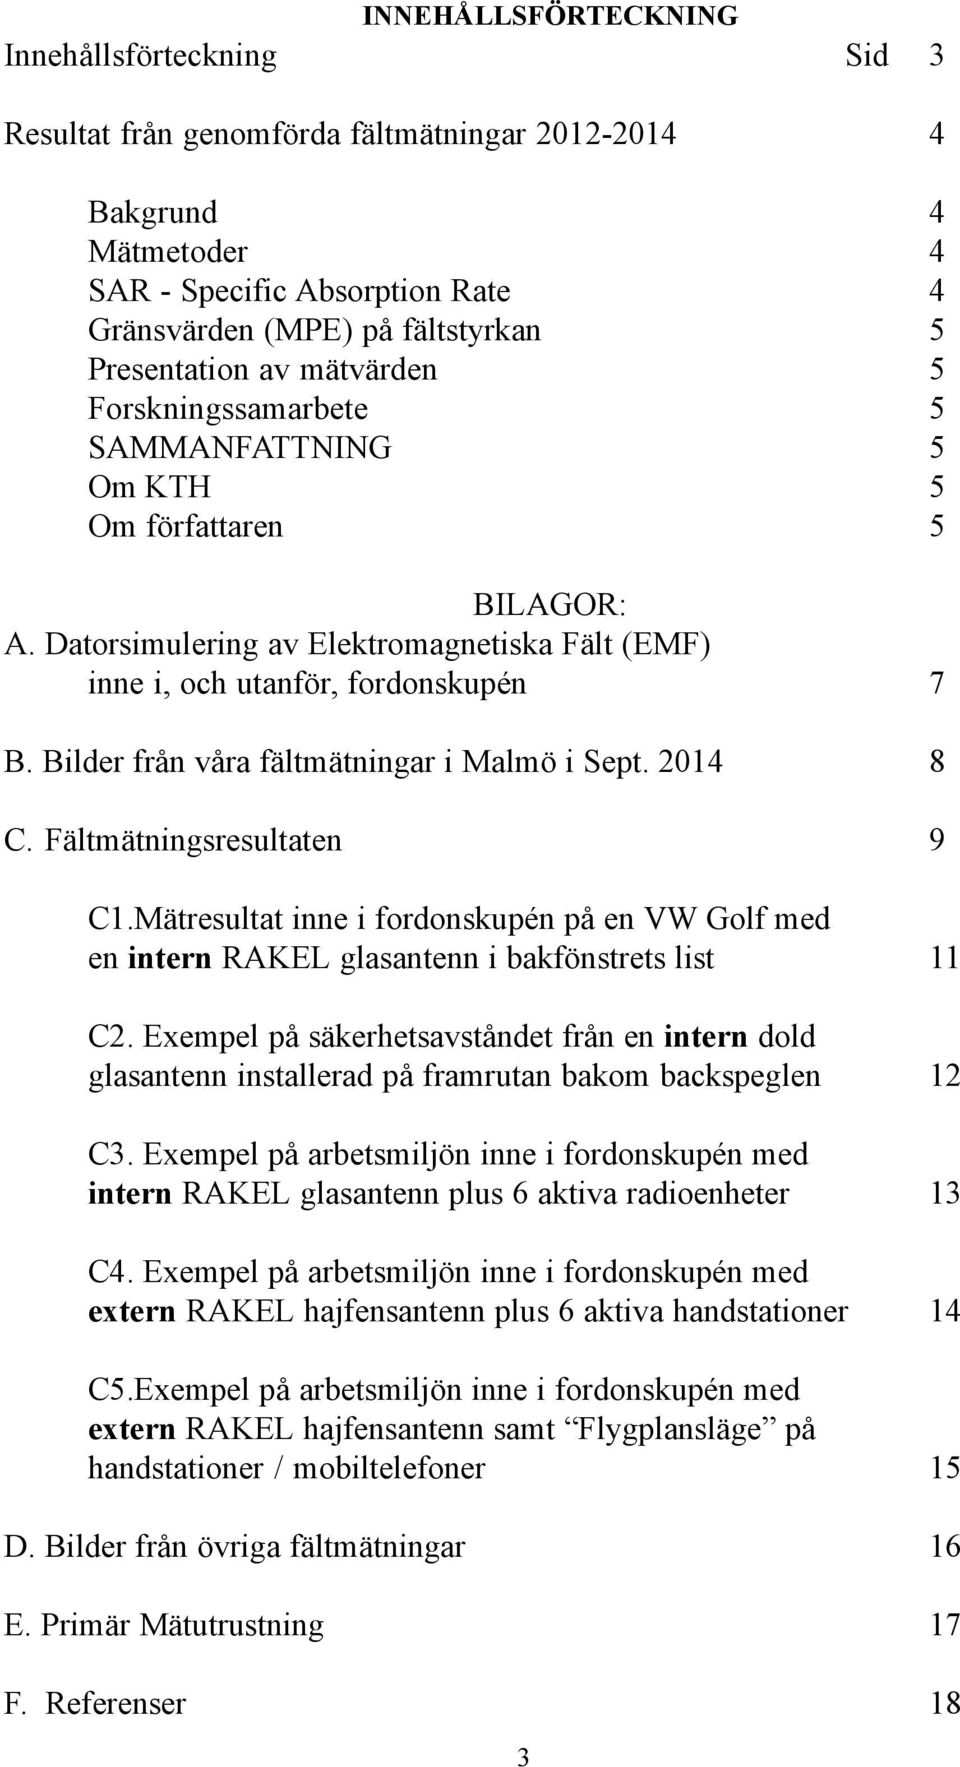 Bilder från våra fältmätningar i Malmö i Sept. 2014 8 C. Fältmätningsresultaten 9 C1.Mätresultat inne i fordonskupén på en VW Golf med en intern RAKEL glasantenn i bakfönstrets list 11 C2.